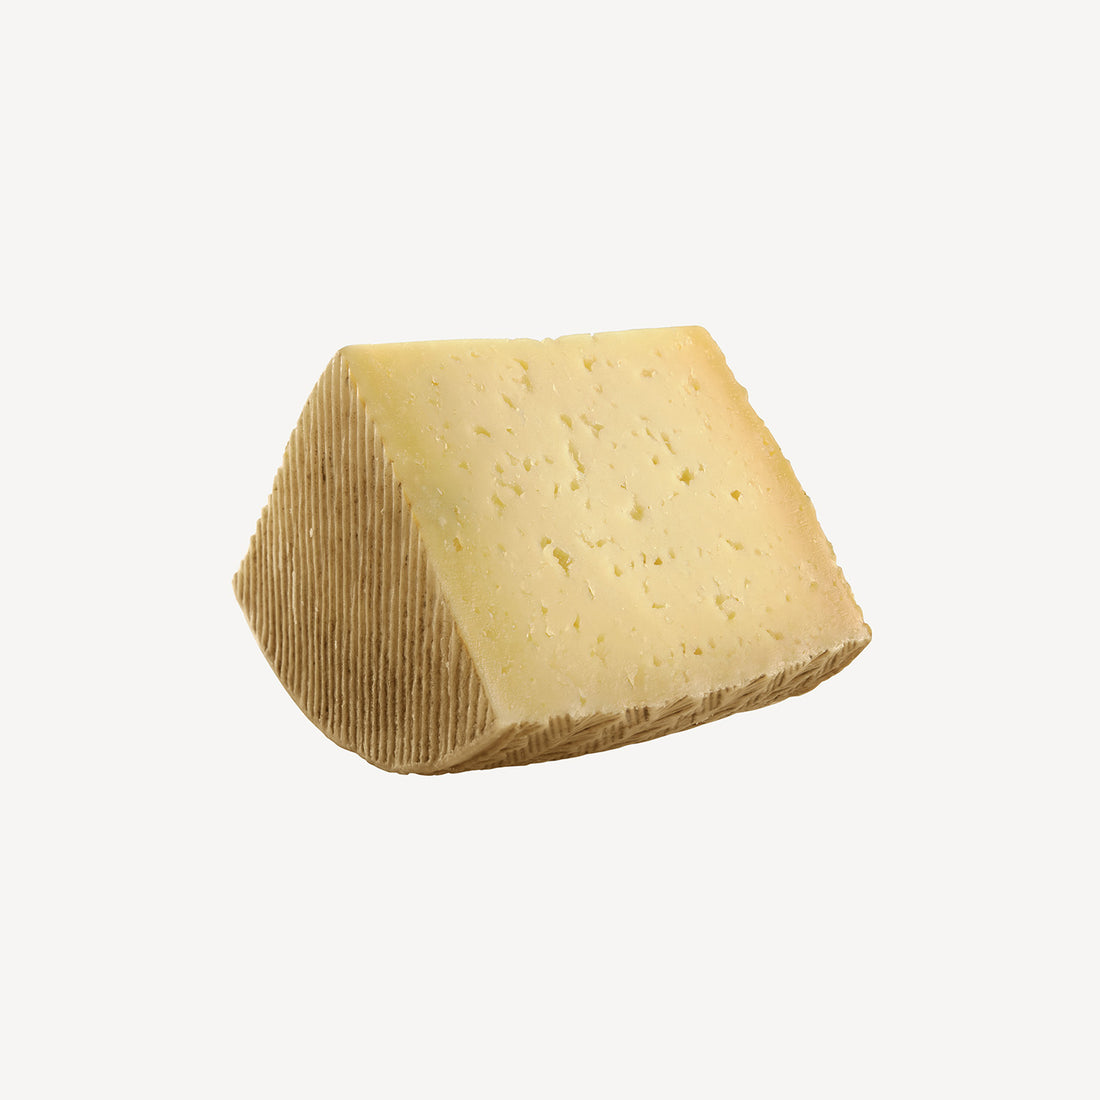 La cuña de queso curado reserva, un preludio visual a un mundo de sabor intenso, textura exquisita y calidad inigualable.